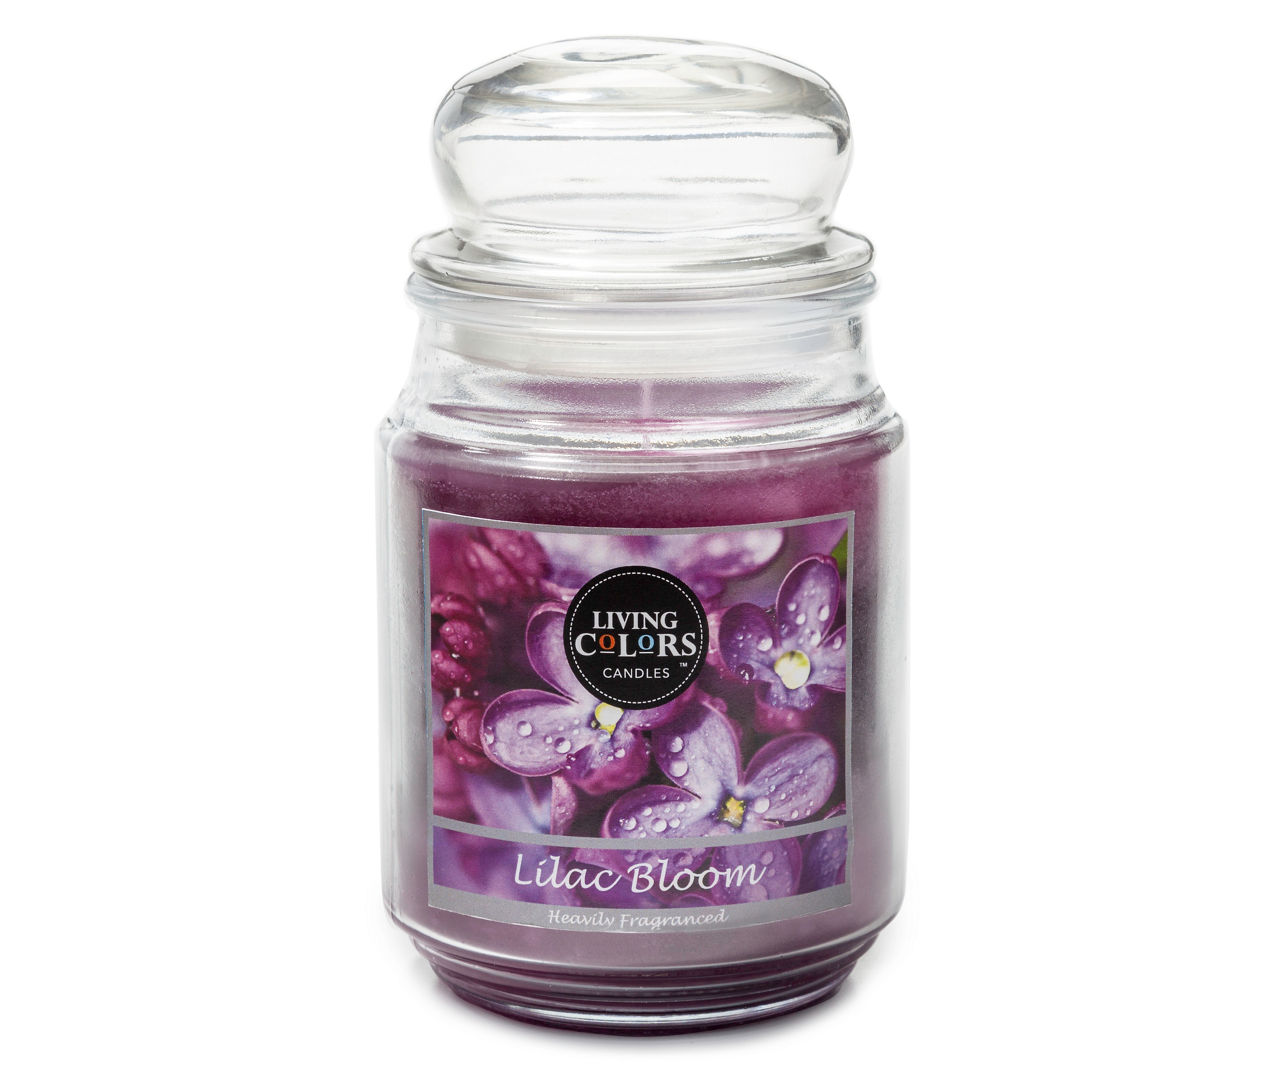 Living Colors Lilac Bloom Jar Candle, 19 Oz. | Big Lots